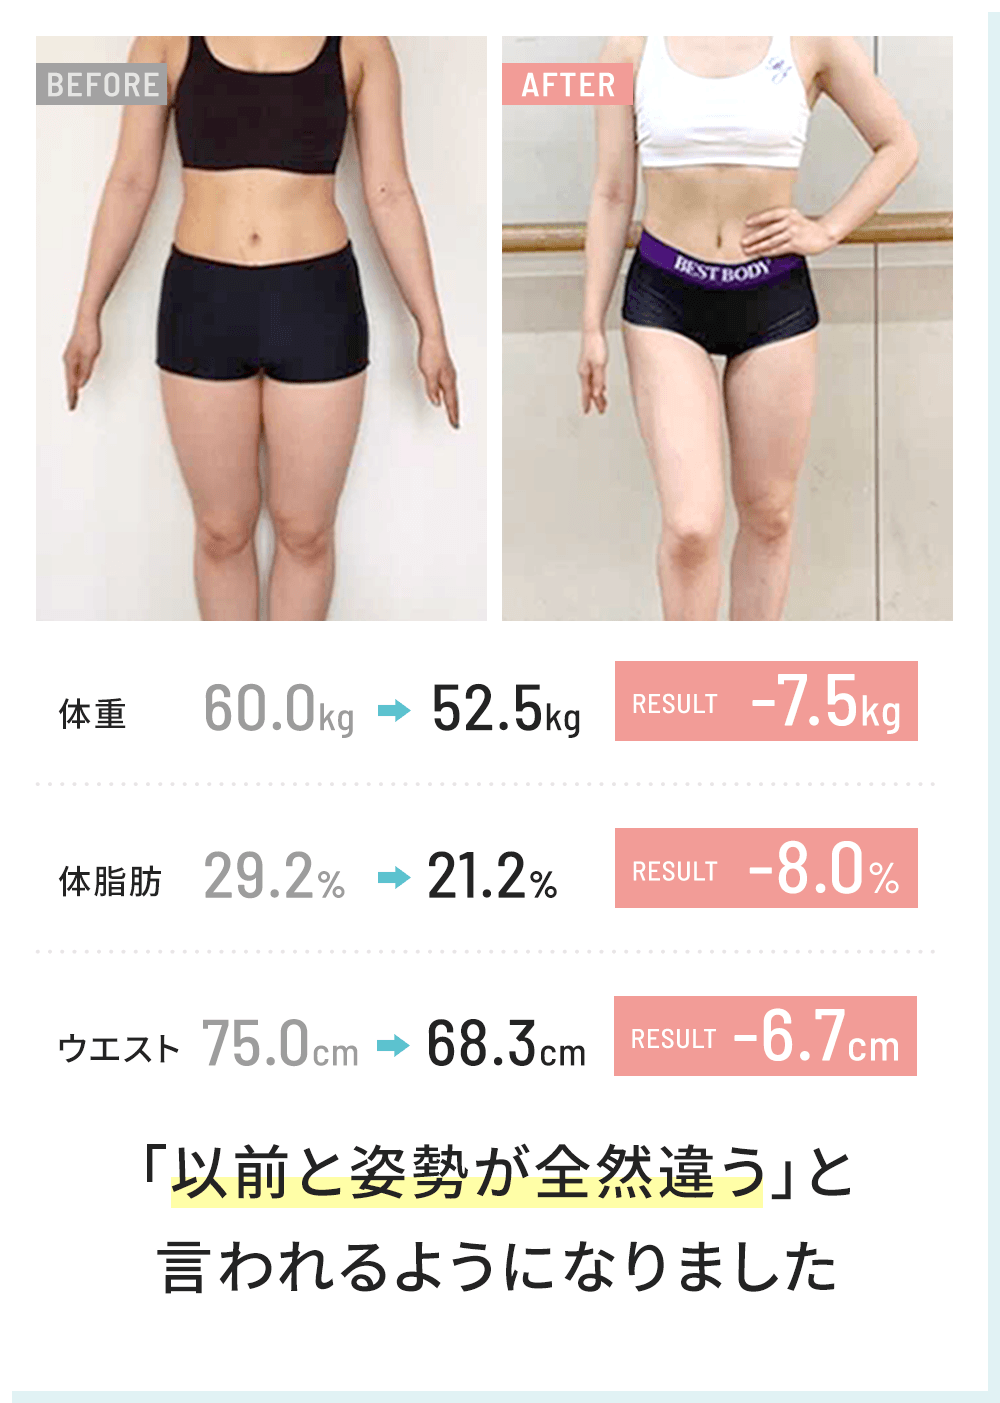 体重 -7.5kg 体脂肪 -8.0% ウエスト -6.7cm「以前と姿勢が全然違う」と言われるようになりました